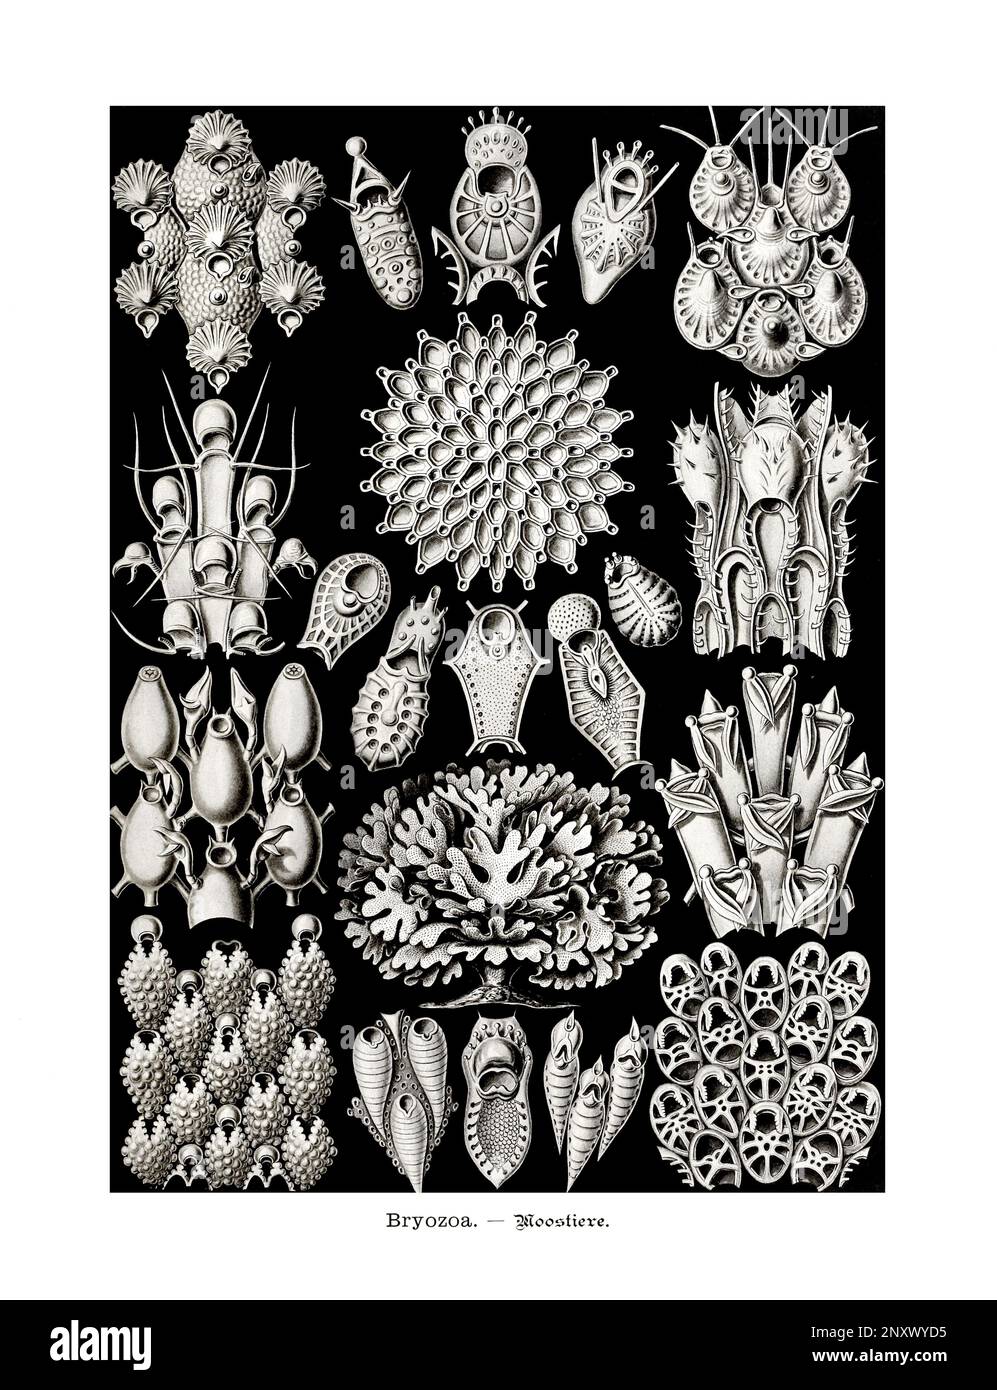 ERNST HAECKEL ART - Bryozoa, Moos - 19. Jahrhundert - Zoologische Illustration - Illustrationen des Buches : "Kunstformen in der Natur" Stockfoto